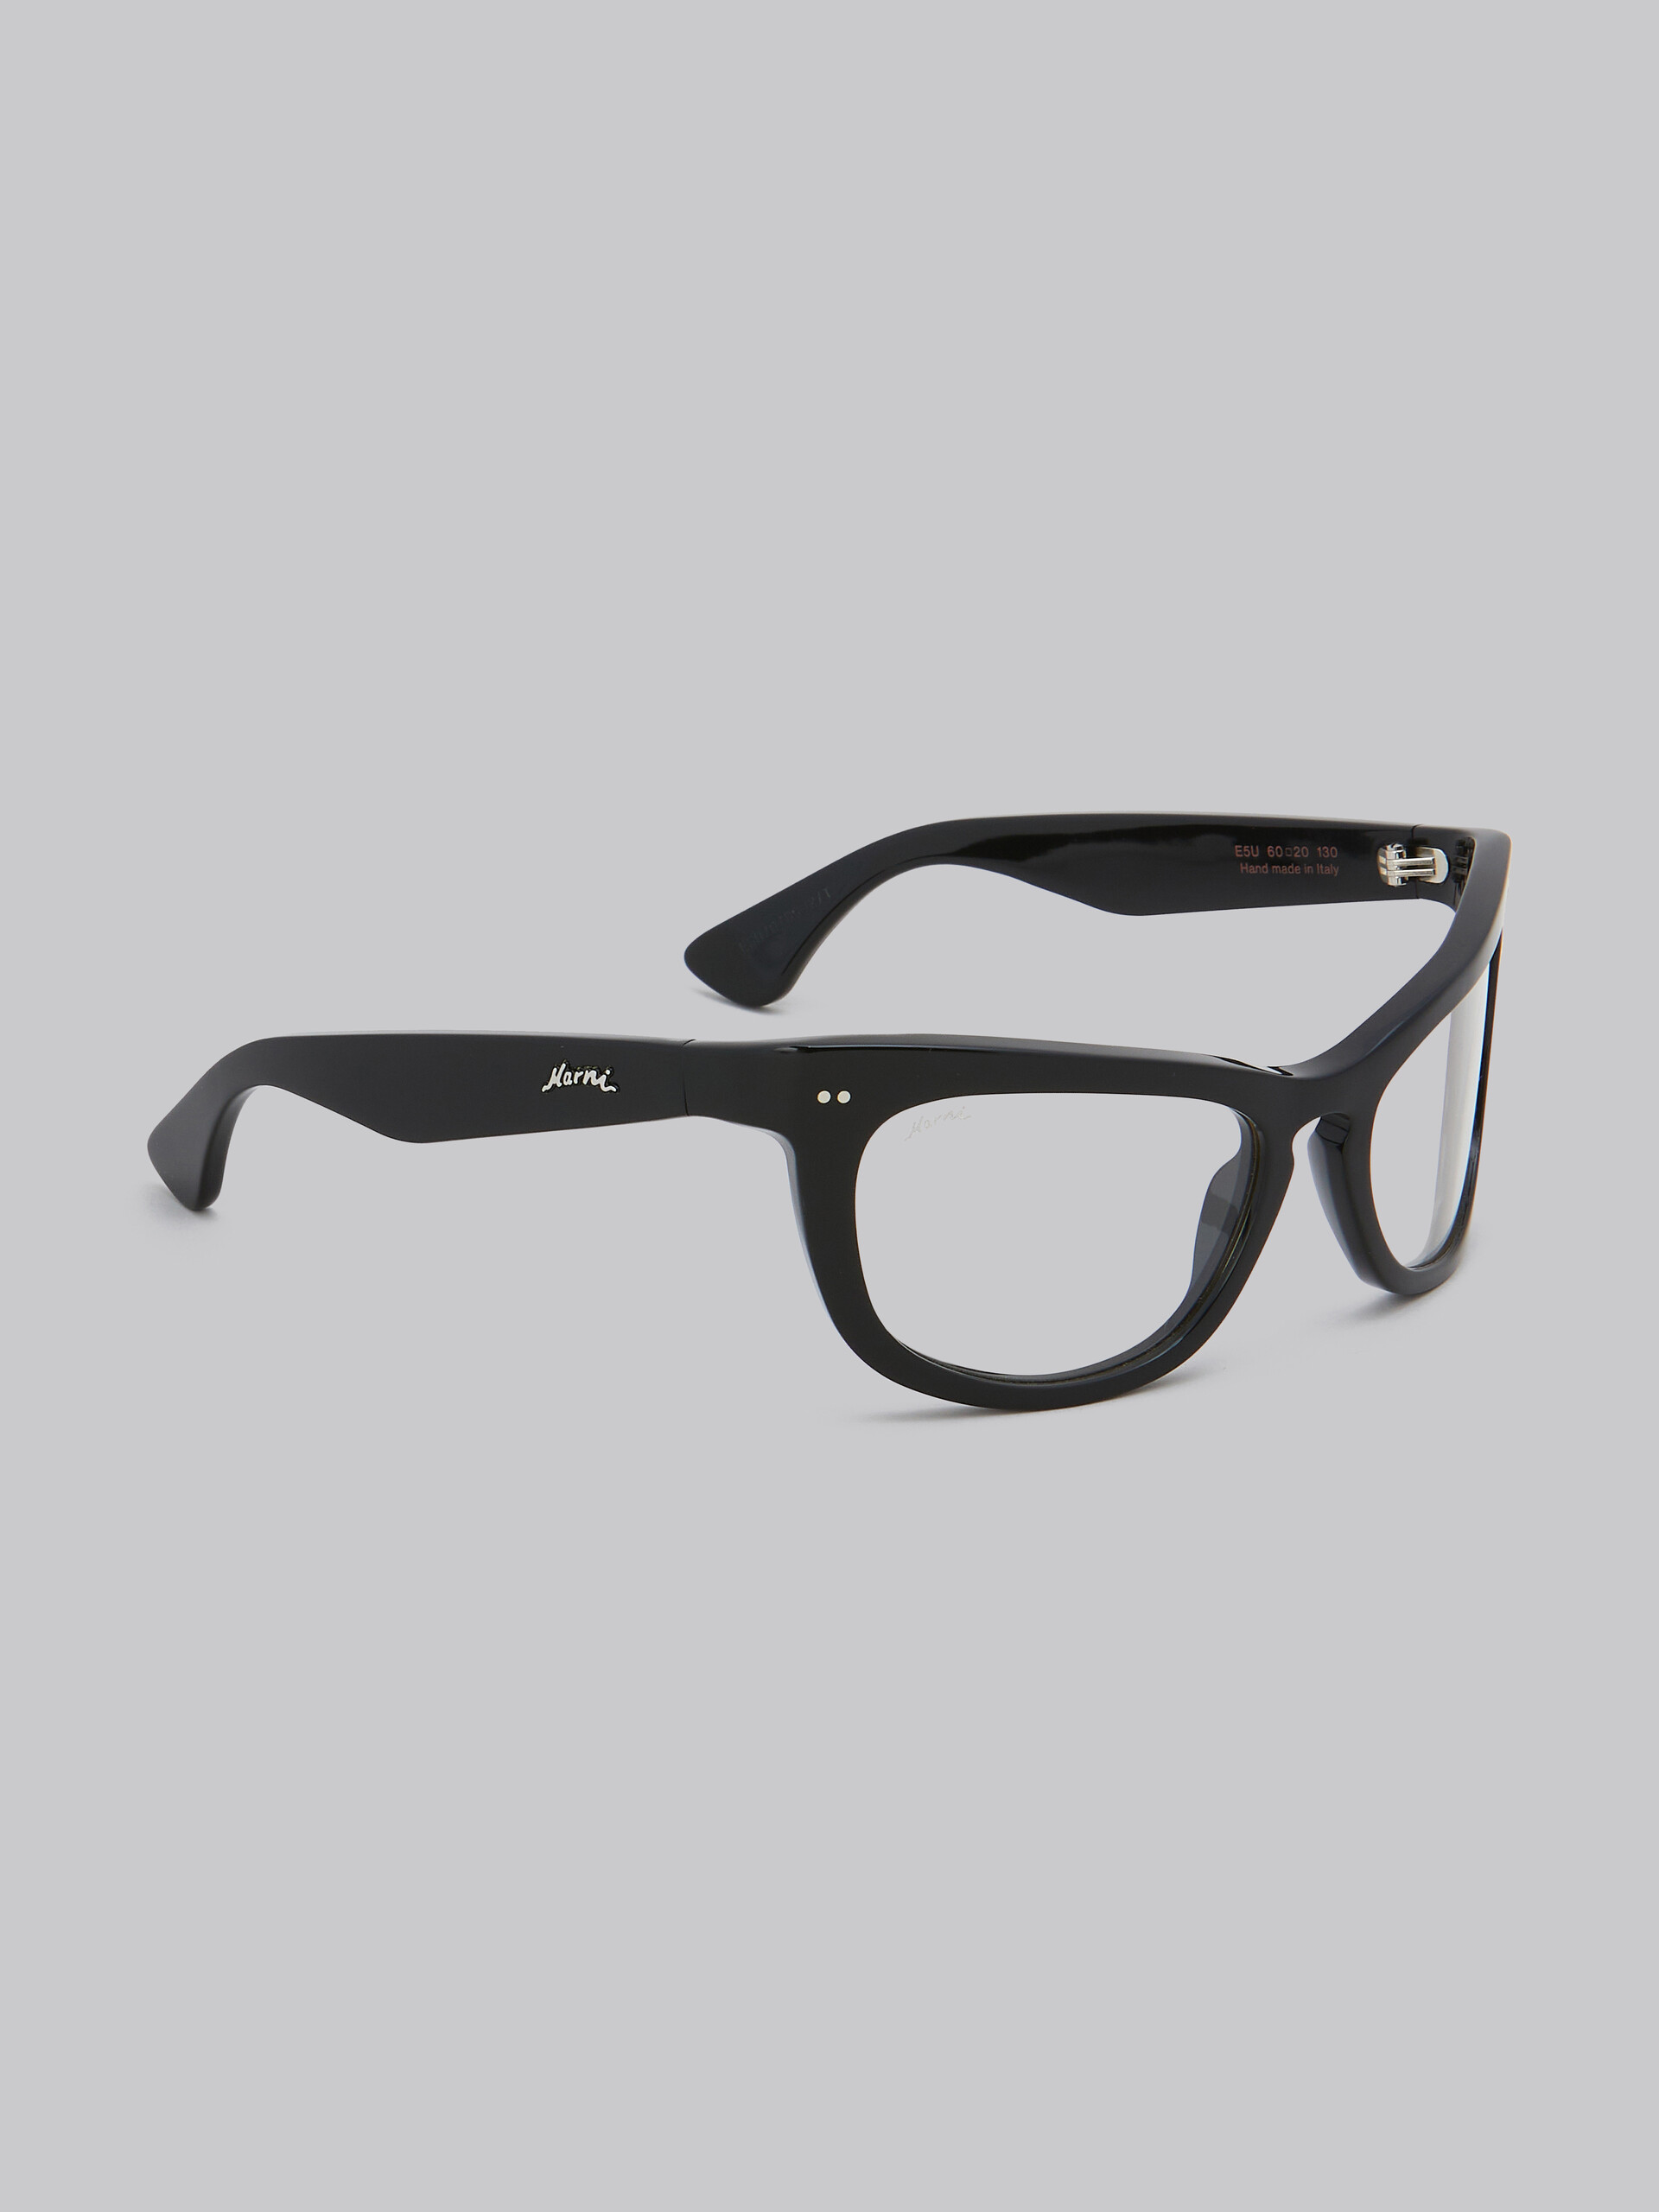 Schwarze Sehbrille Isamu - Optisch - Image 3